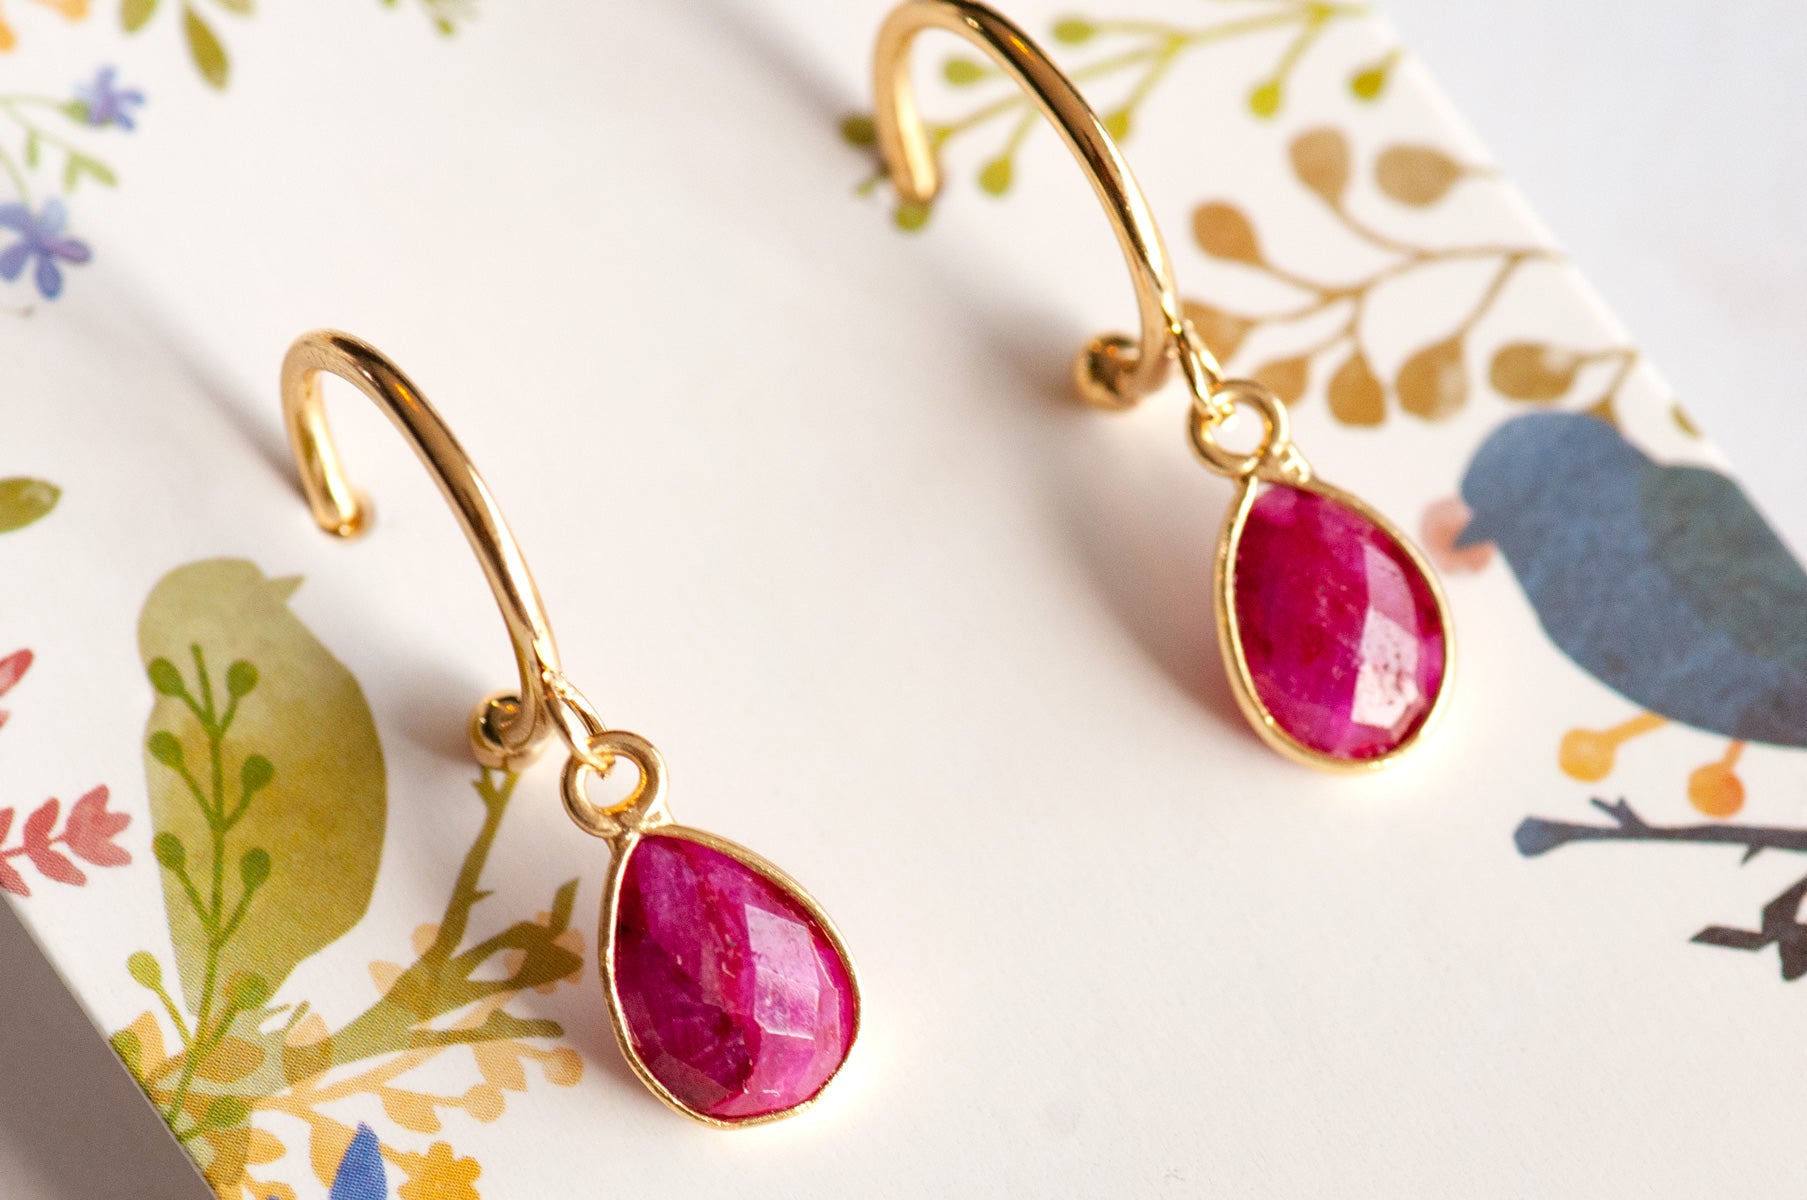 Ruby Bezel Hoop Earrings in Gold or Silver